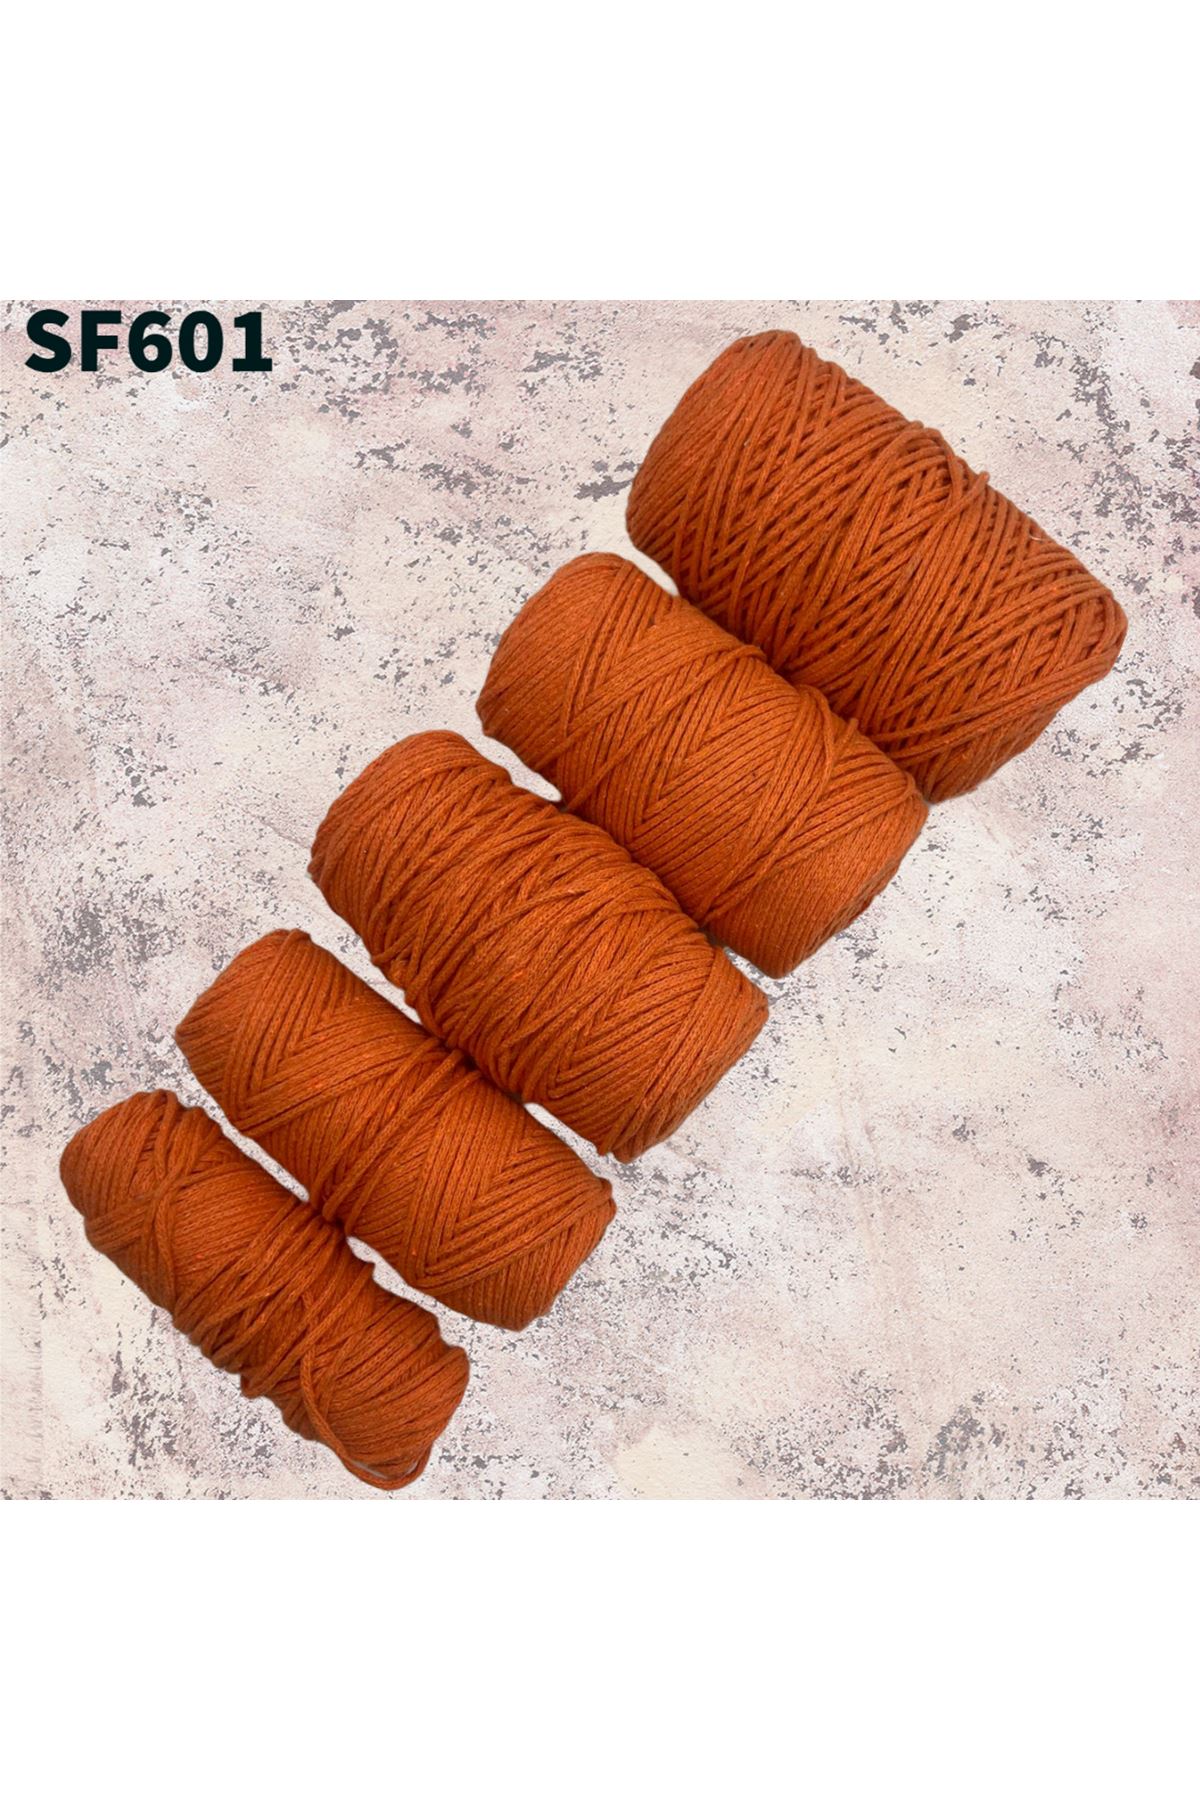 Stok Fazlası Cotton Makrome Turuncu 840 Gram SF601